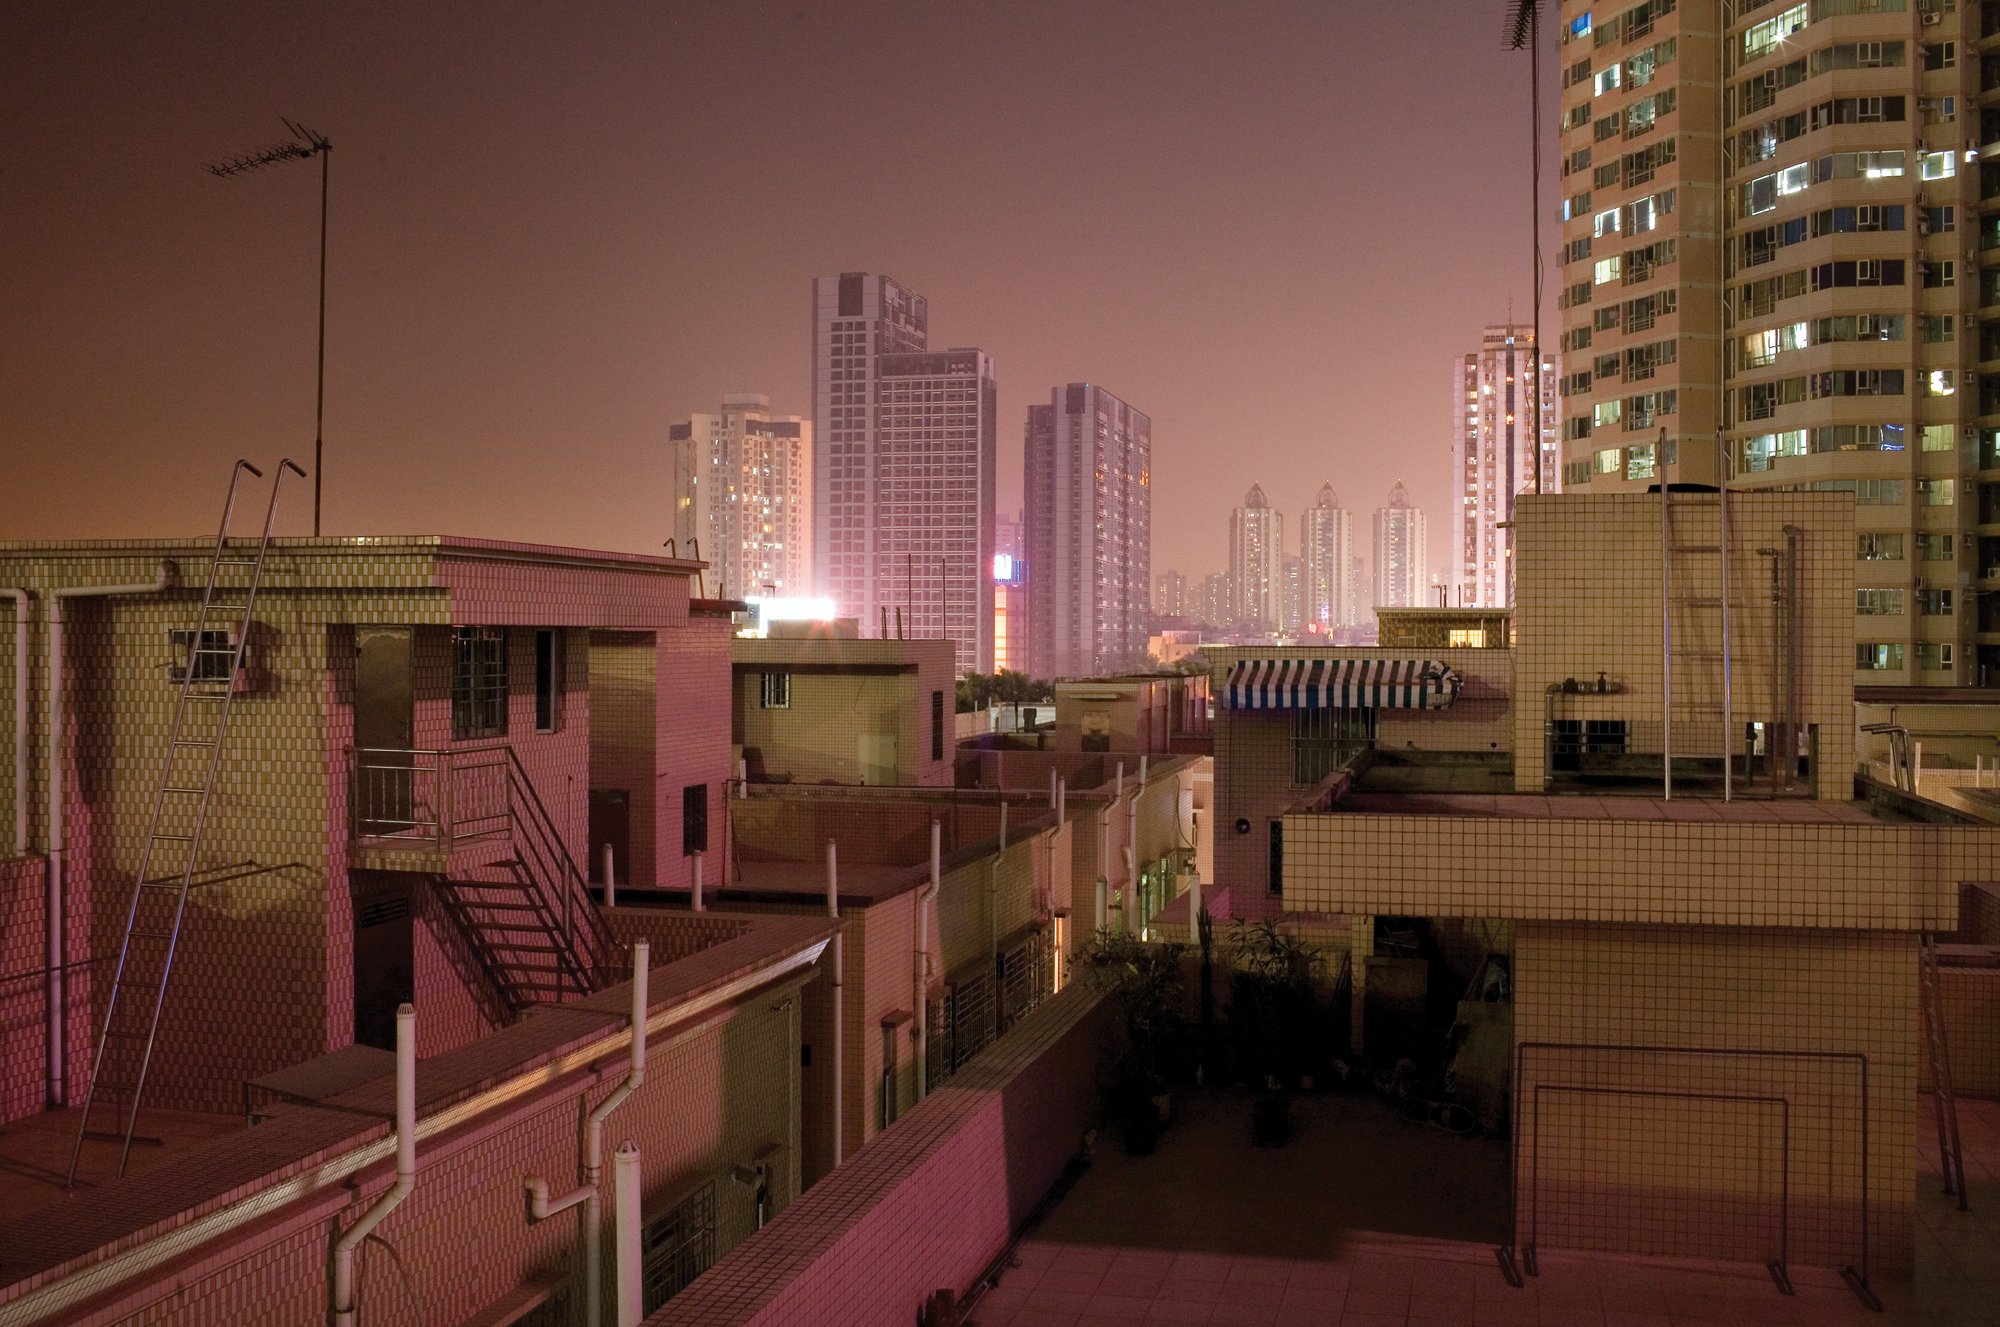 Shenzhen rooftop view.jpg